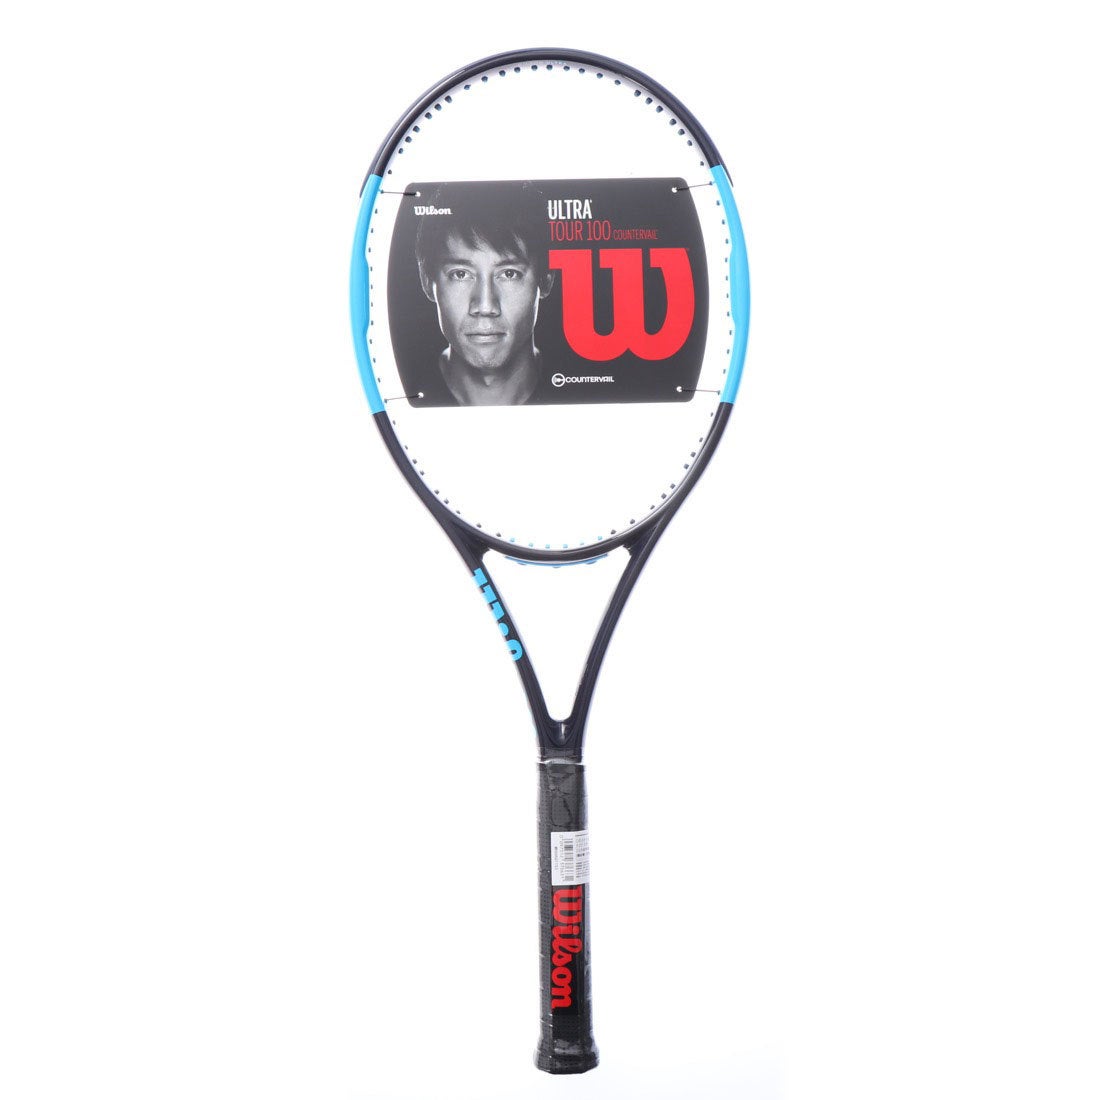 ウィルソン Wilson 硬式テニス 未張りラケット ULTRA TOUR 100 CV WR006011S2